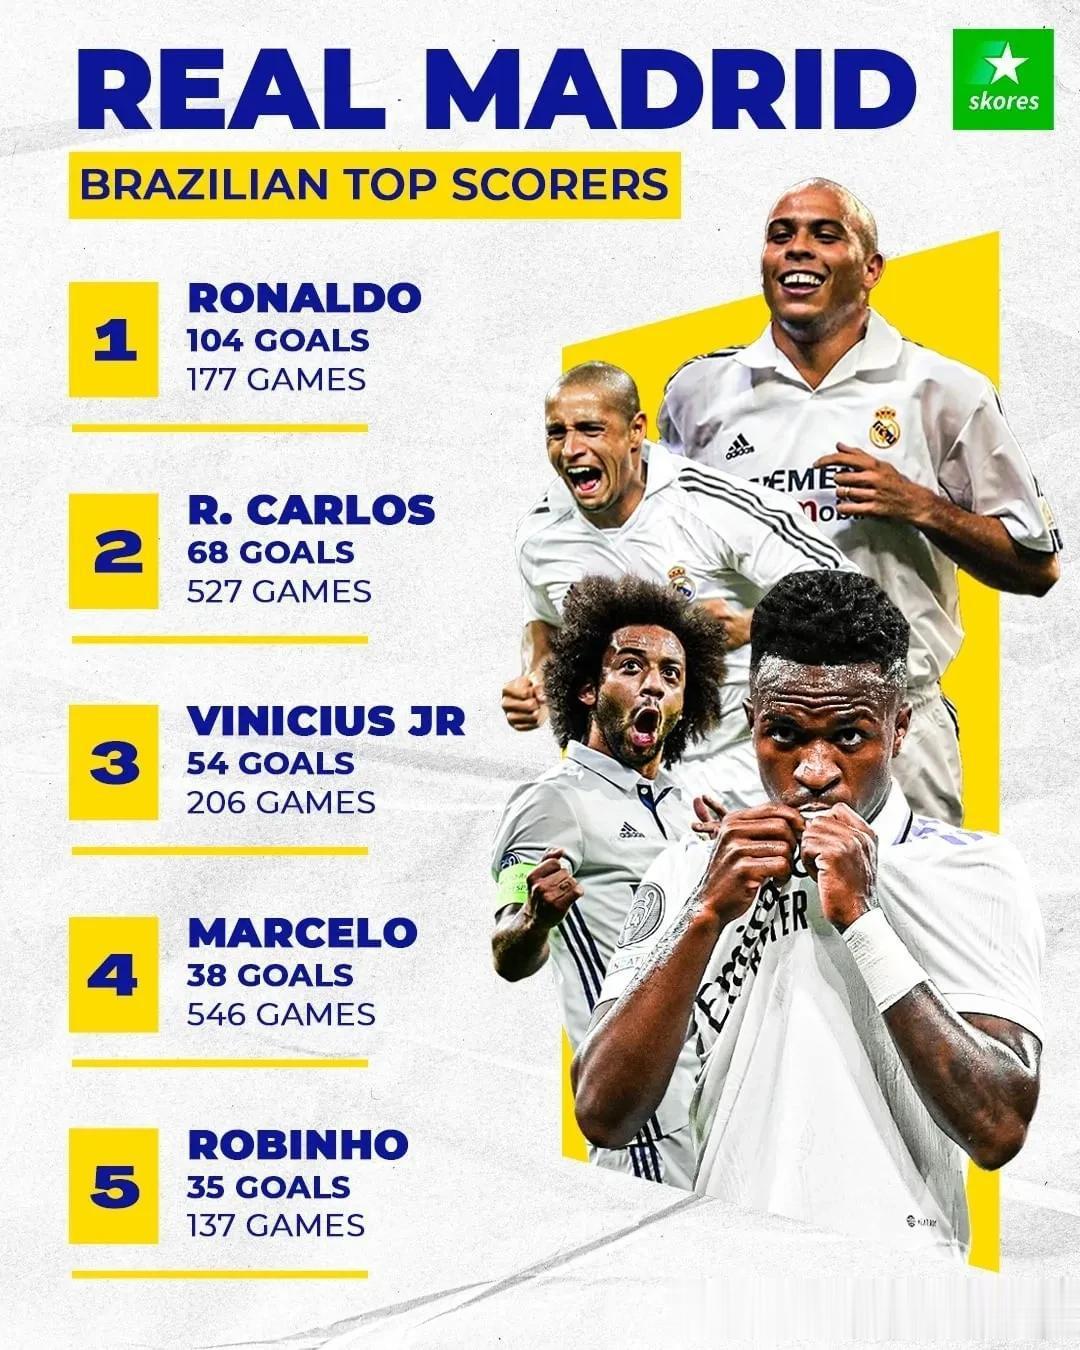 为皇马进球最多的巴西球员：
1、罗纳尔多，177场比赛104粒进球
2、卡洛斯，(1)